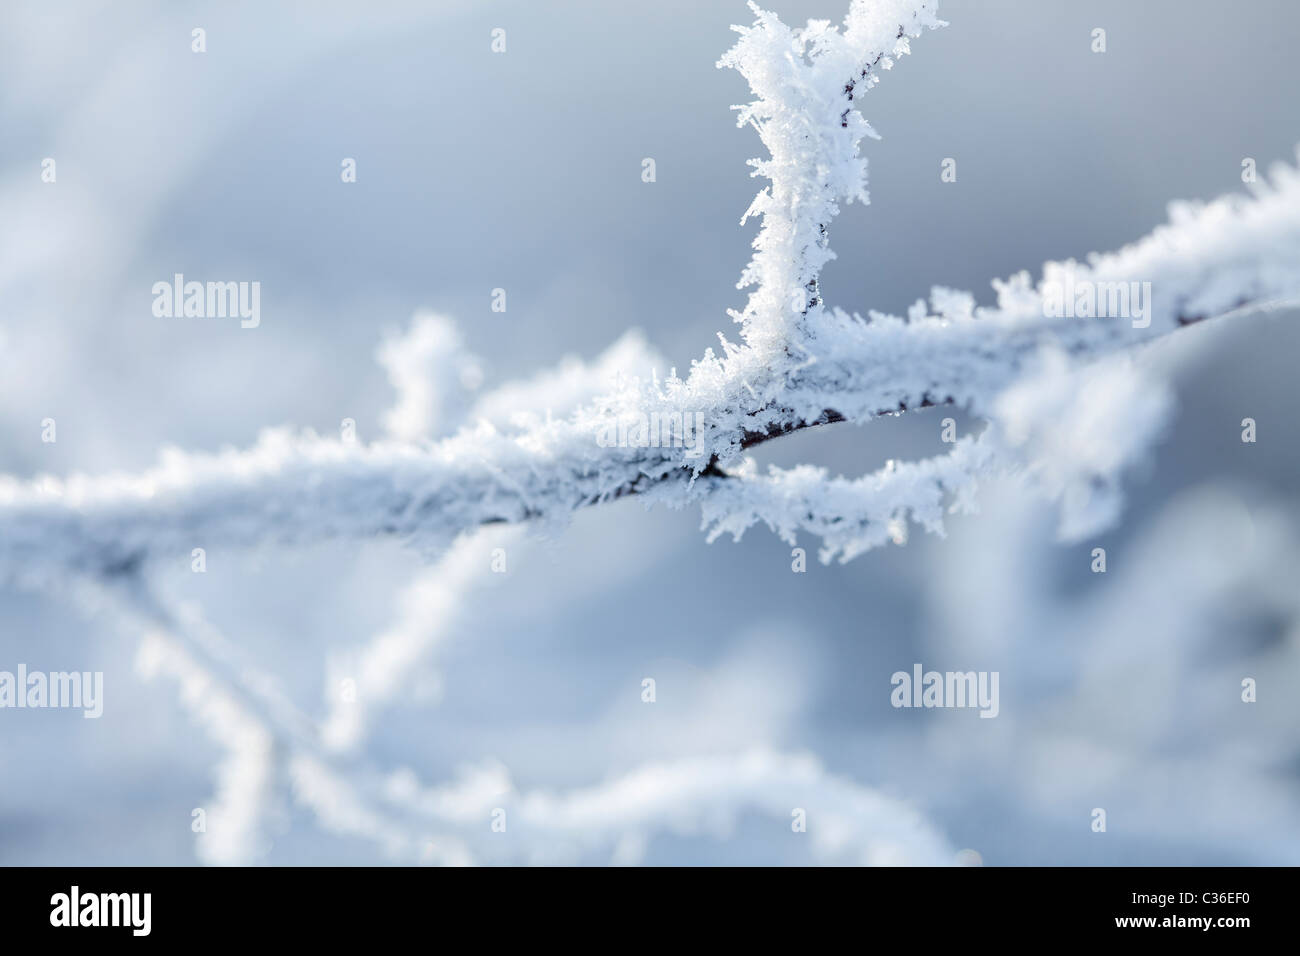 Las ramas cubiertas de nieve y cristales de hielo Foto de stock